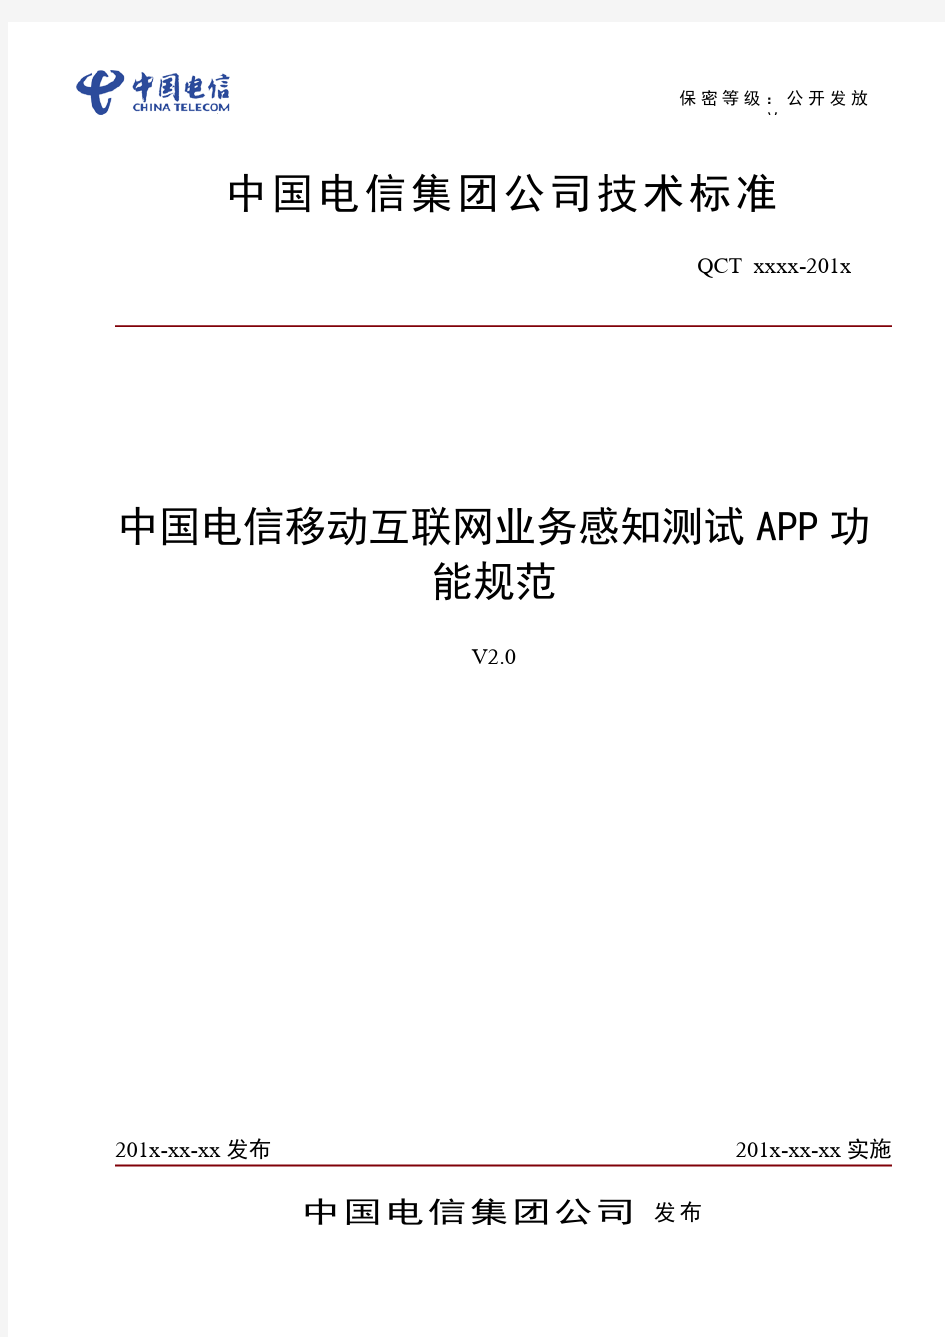 中国电信移动互联网业务感知测试APP功能规范v2.0